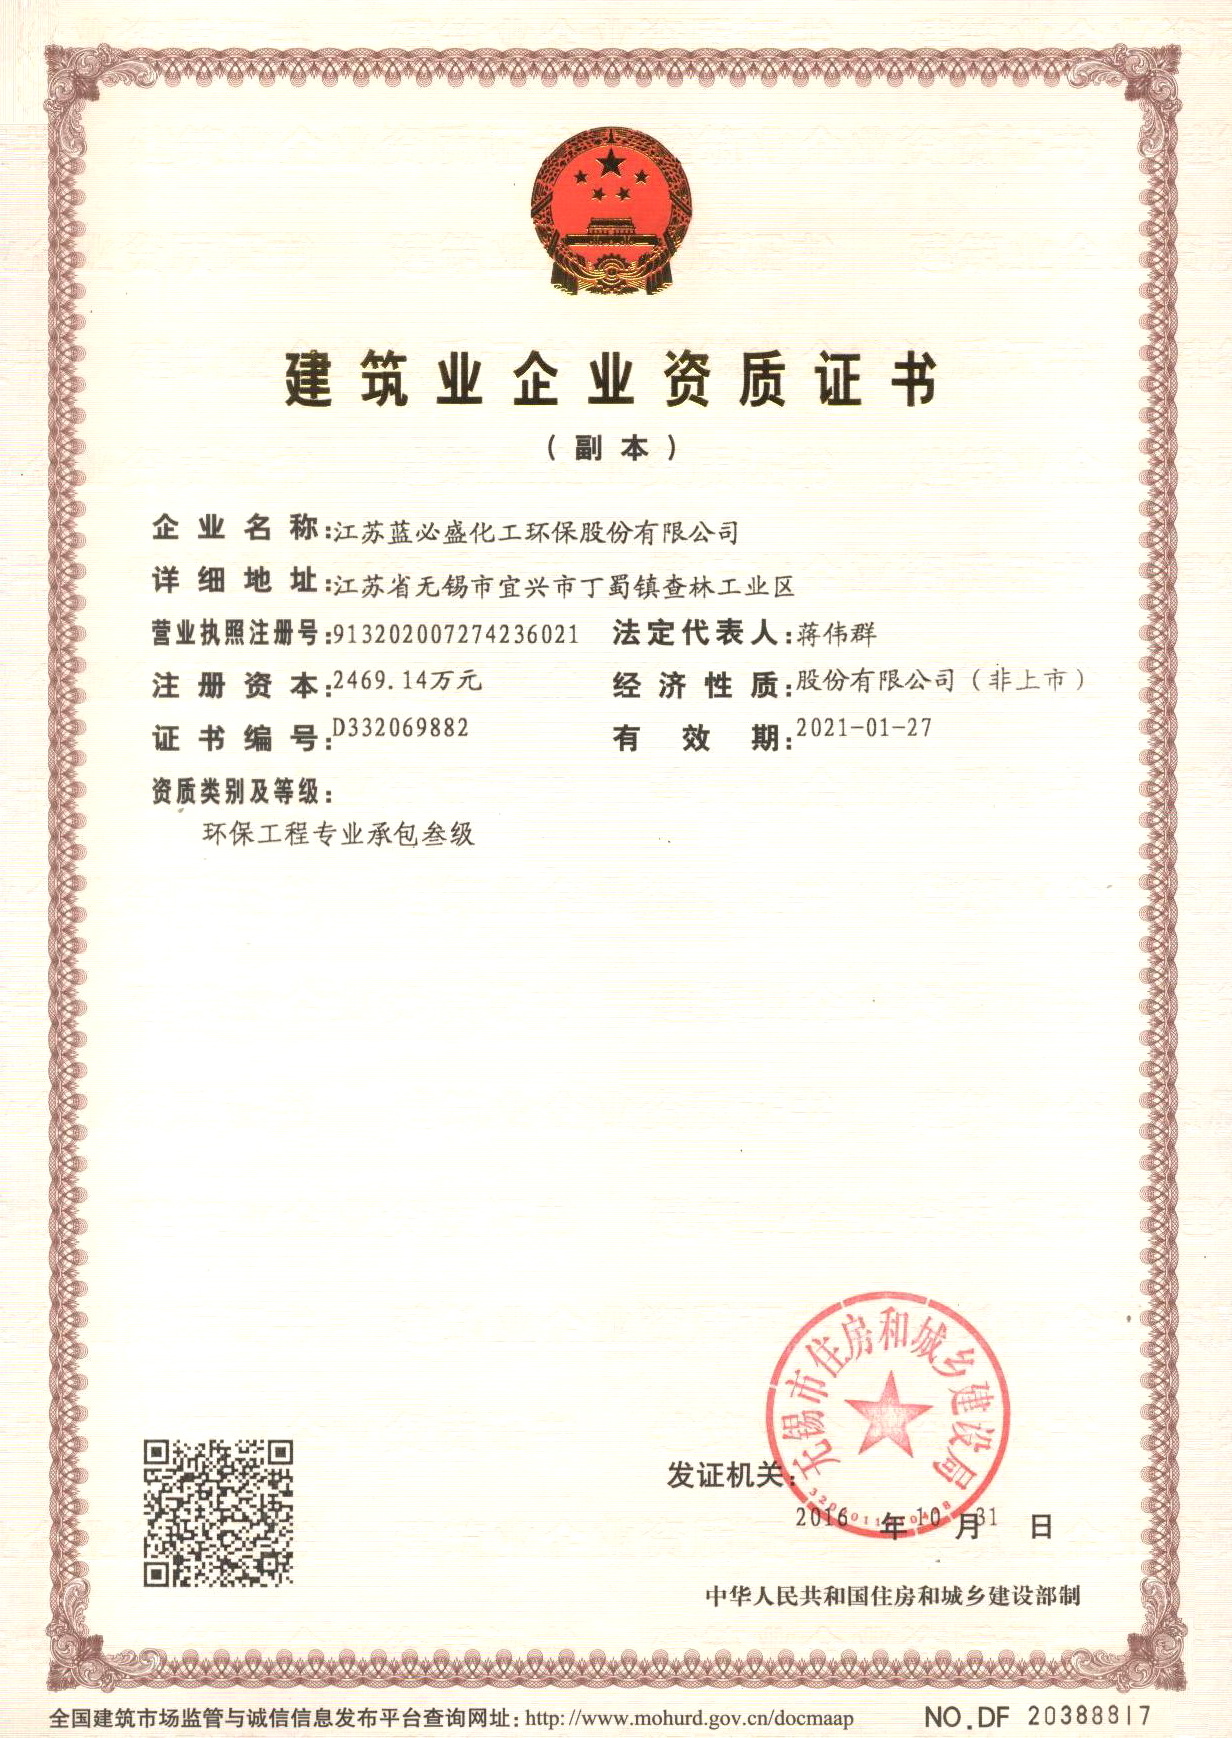 蓝必盛-环境管理体系认证证书